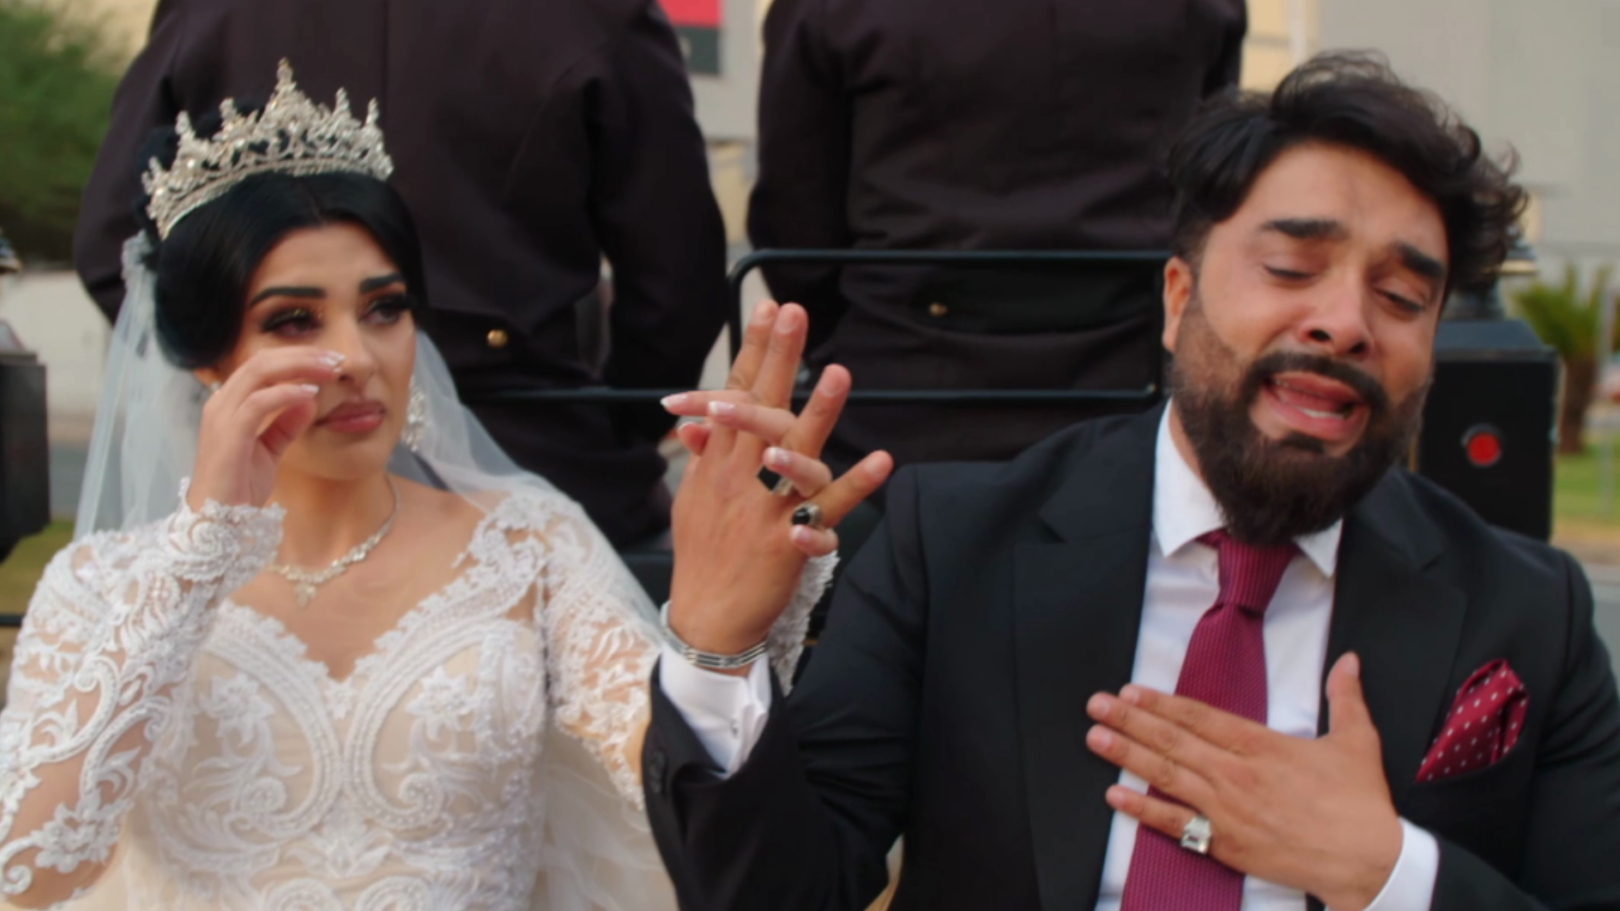 La espectacular y emotiva llegada de Susi a su boda acompañada de su padre: “Ha sido un momento mágico”